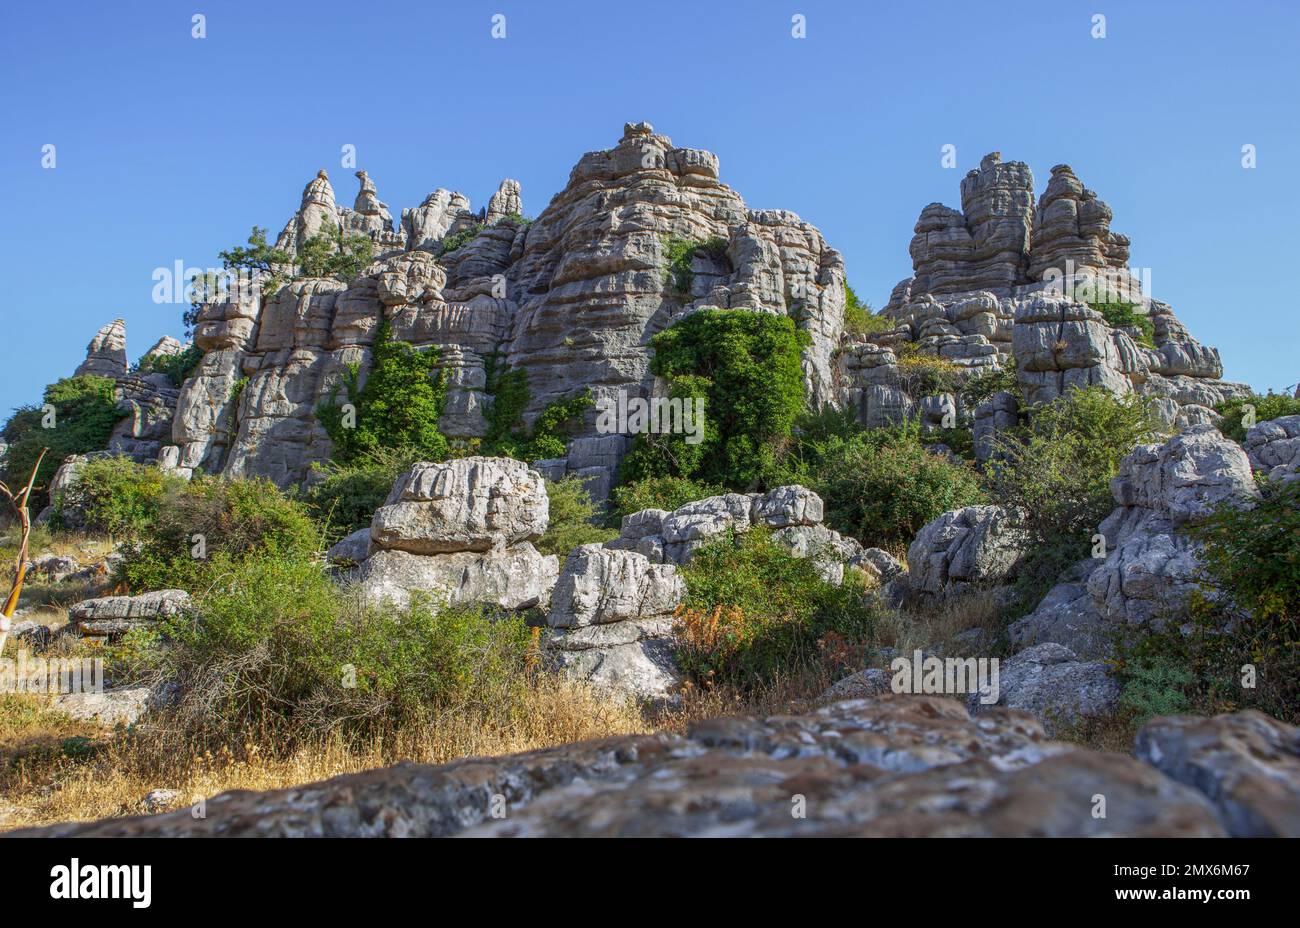 Formazioni rocciose carsiche nel Parco Nazionale Torcal de Antequera, Malaga, Spagna. Foto Stock